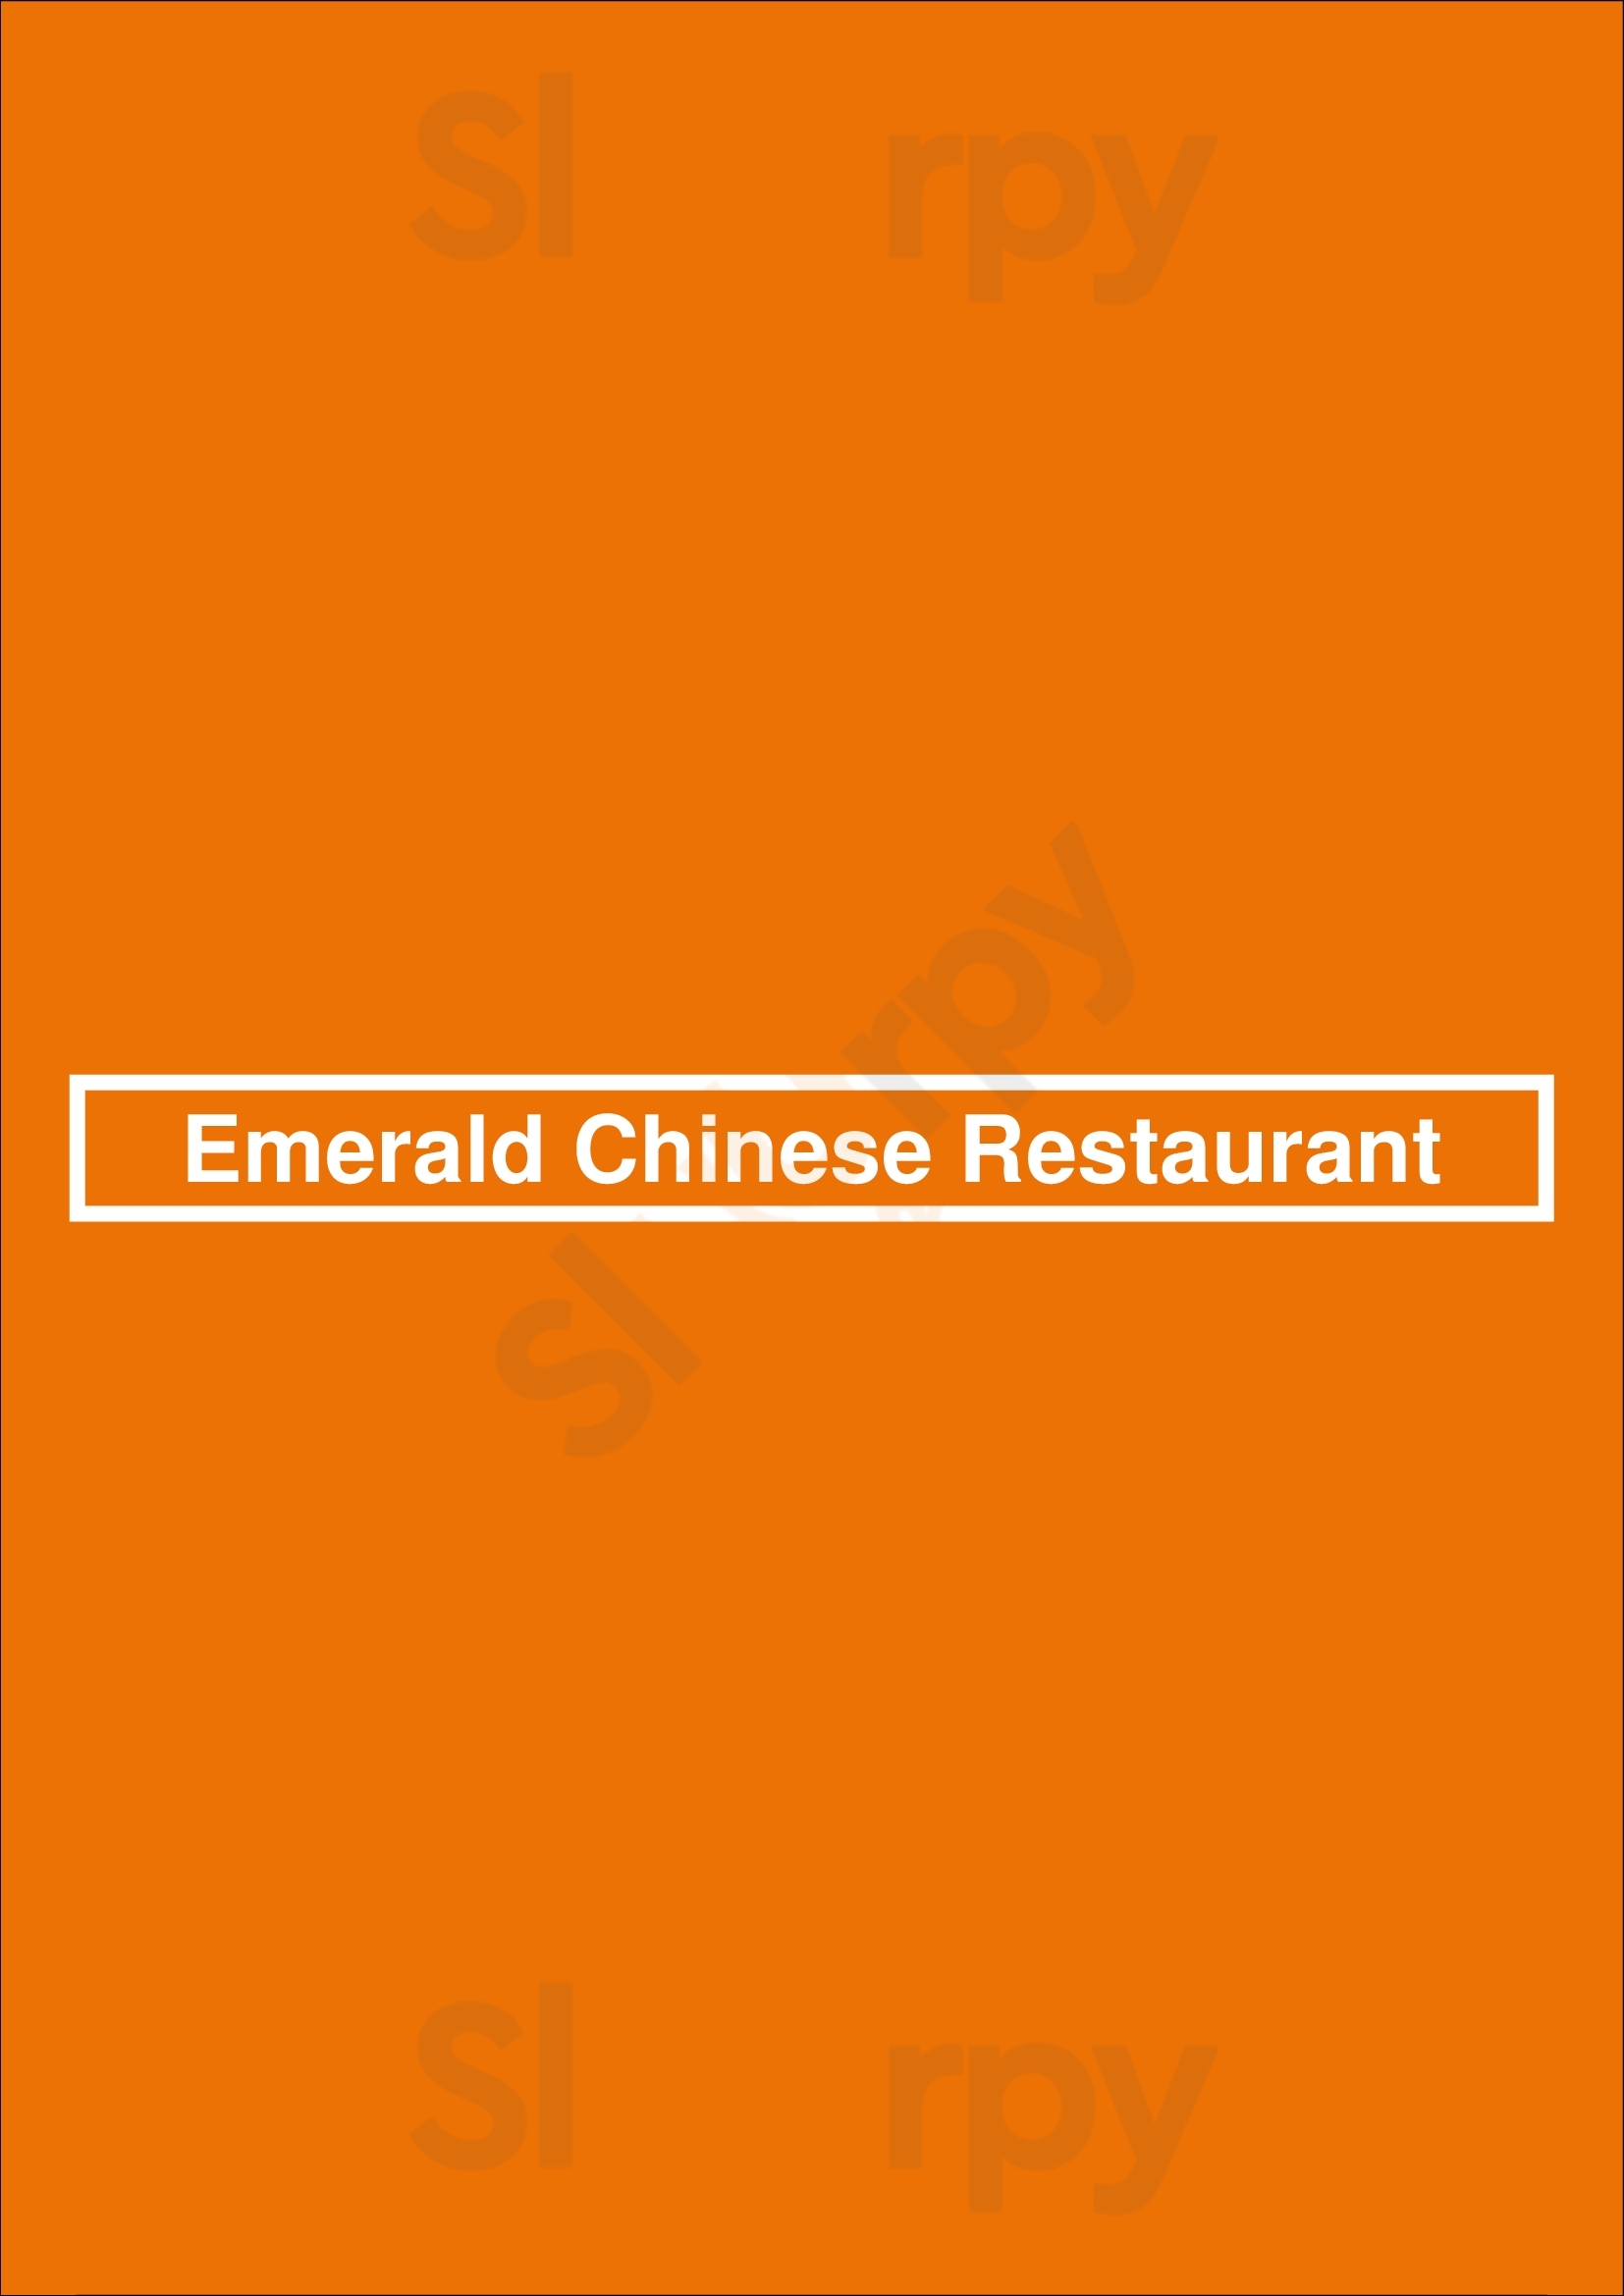 Emerald Chinese Restaurant Mississauga Menu - 1